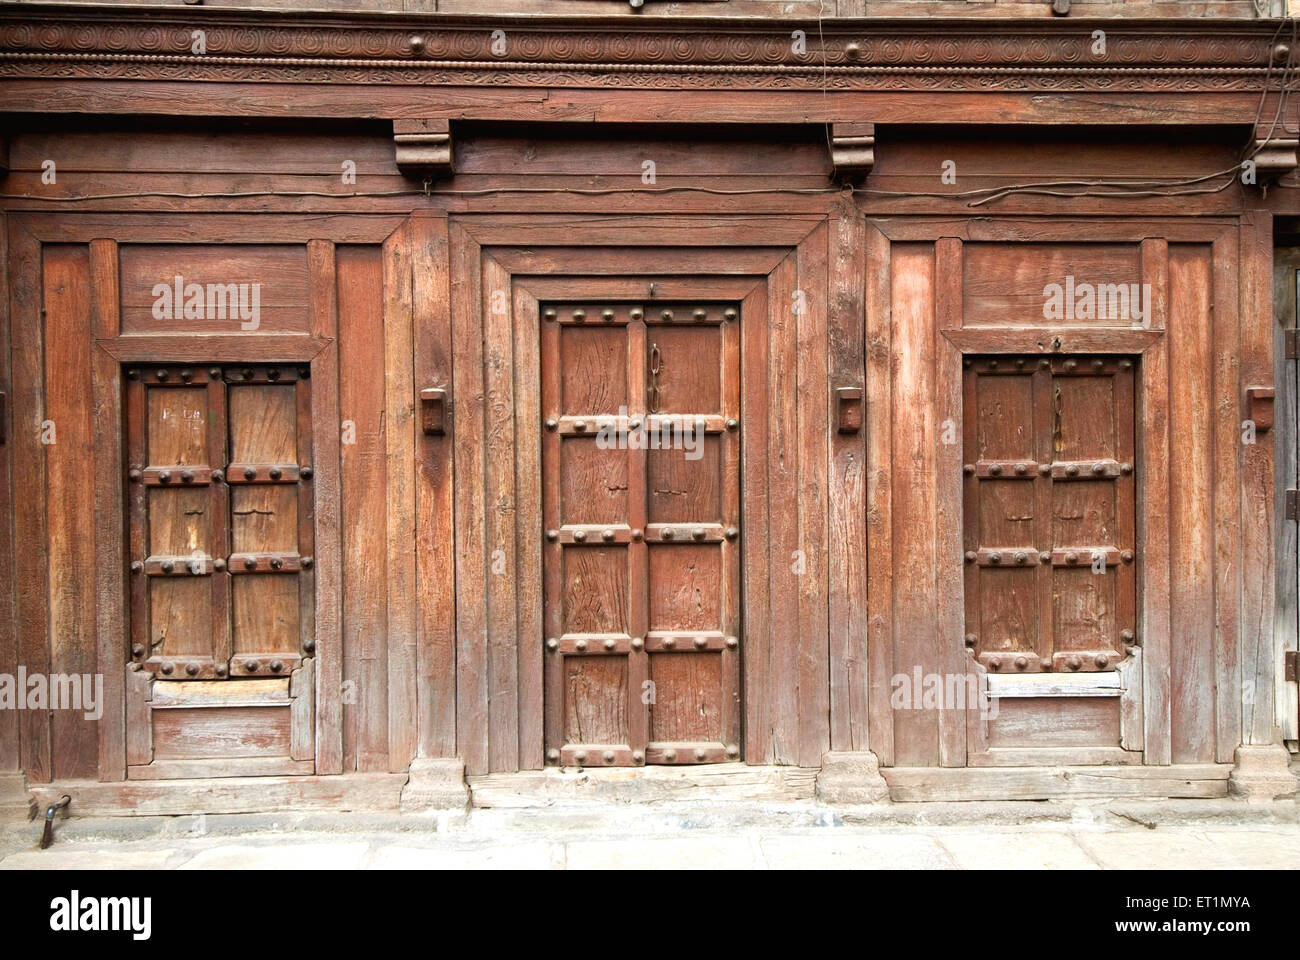 Geschlossene hölzerne Tür und Fenster des alten Hauses, Junnar Dorf; Bezirk Pune; Maharashtra; Indien; Asien; Indisch; Asiatisch Stockfoto